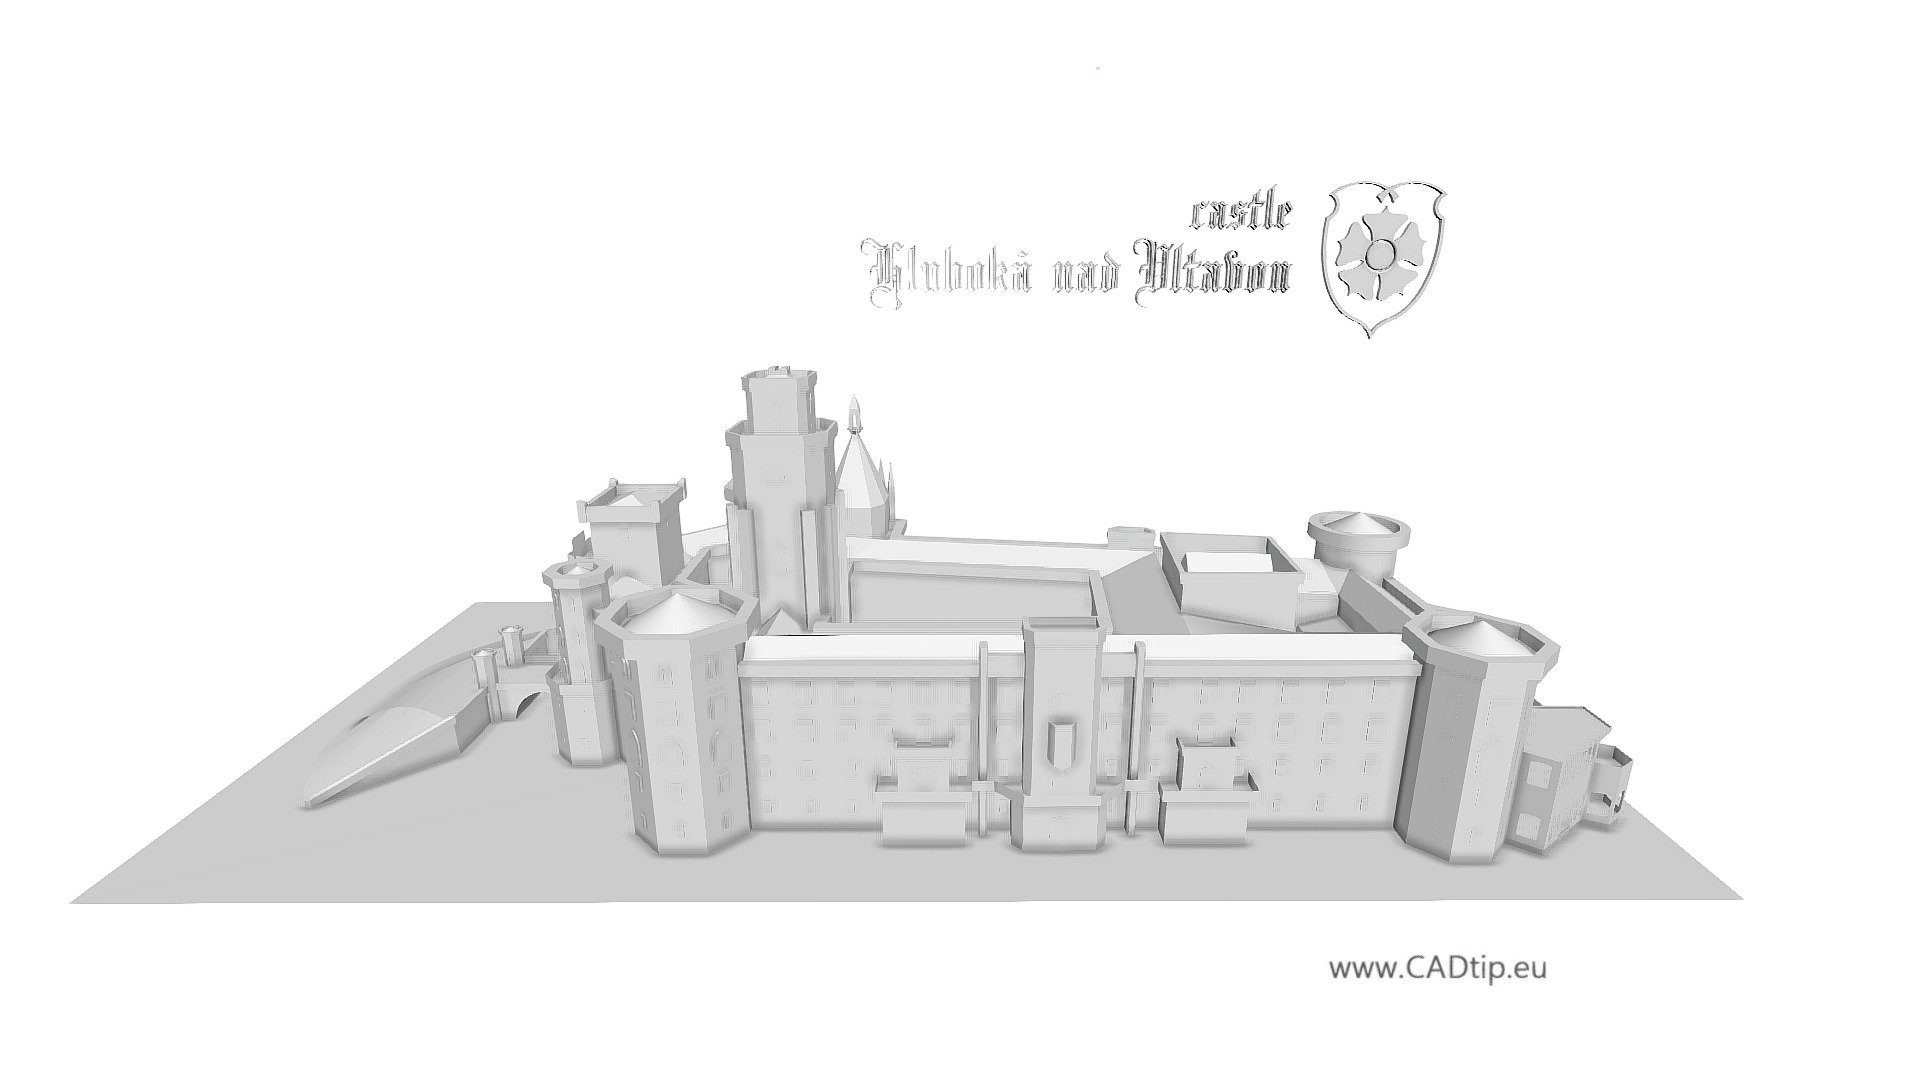 More: http://marek.cadtip.eu/ - Castle Hluboka nad Vltavou, CZ - 3D model by Mar.K 3d model